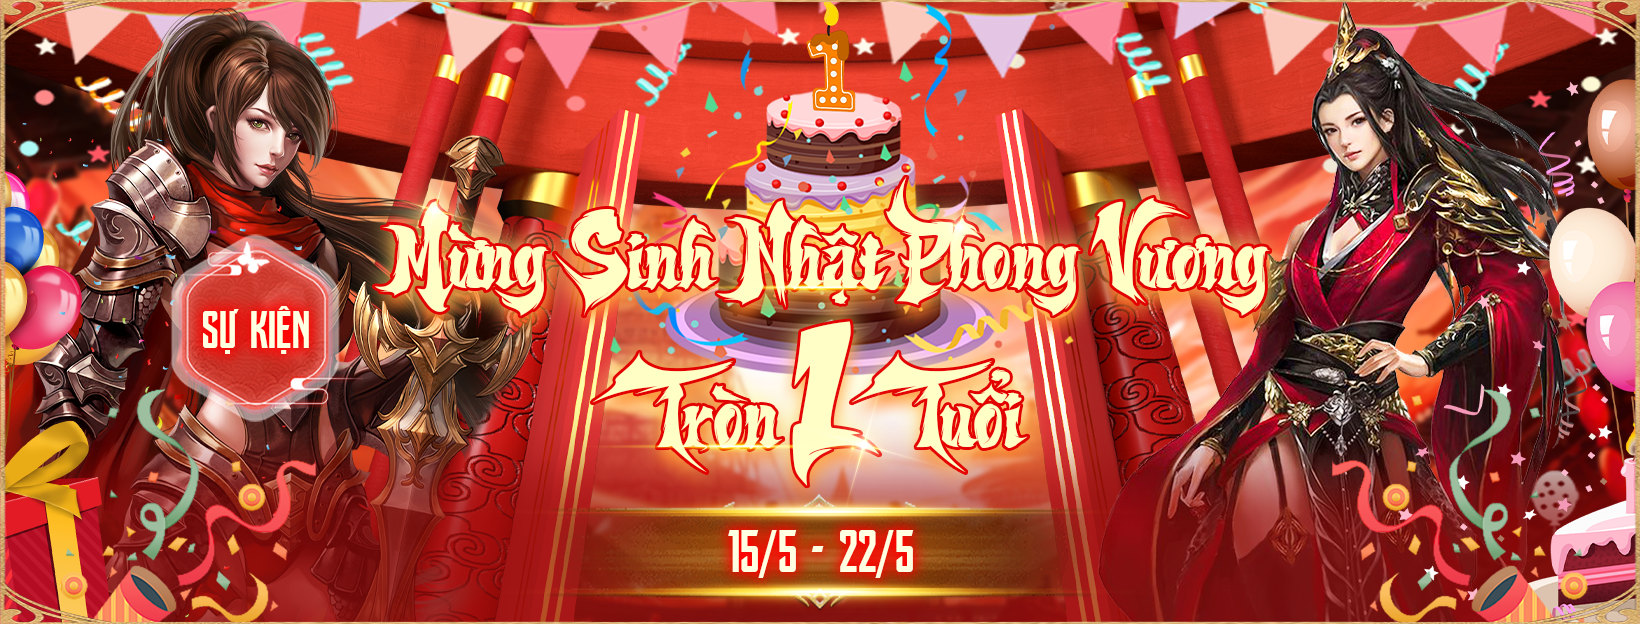 Phong Vương ADNX Mobile mừng sinh nhật một tuổi với hàng loạt sự kiện vô cùng hấp dẫn- Ảnh 1.